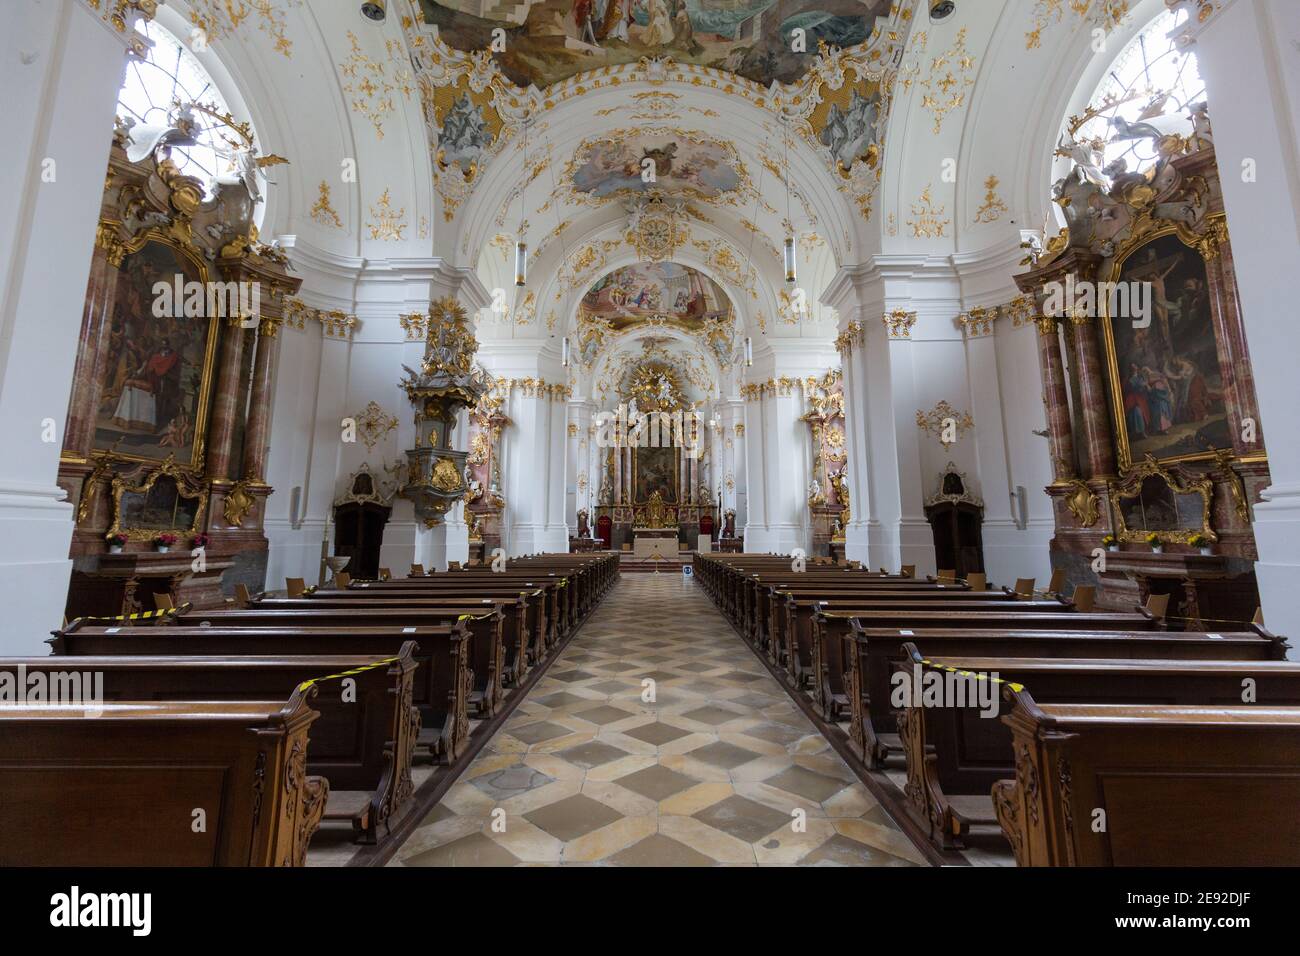 Schäftlarn, Deutschland - 17. Nov 2020: Blick entlang des Hauptschiffs der Kirche des Klosters Schäftlarn zum Altar. Innenraum einer bayerischen Kirche. Stockfoto